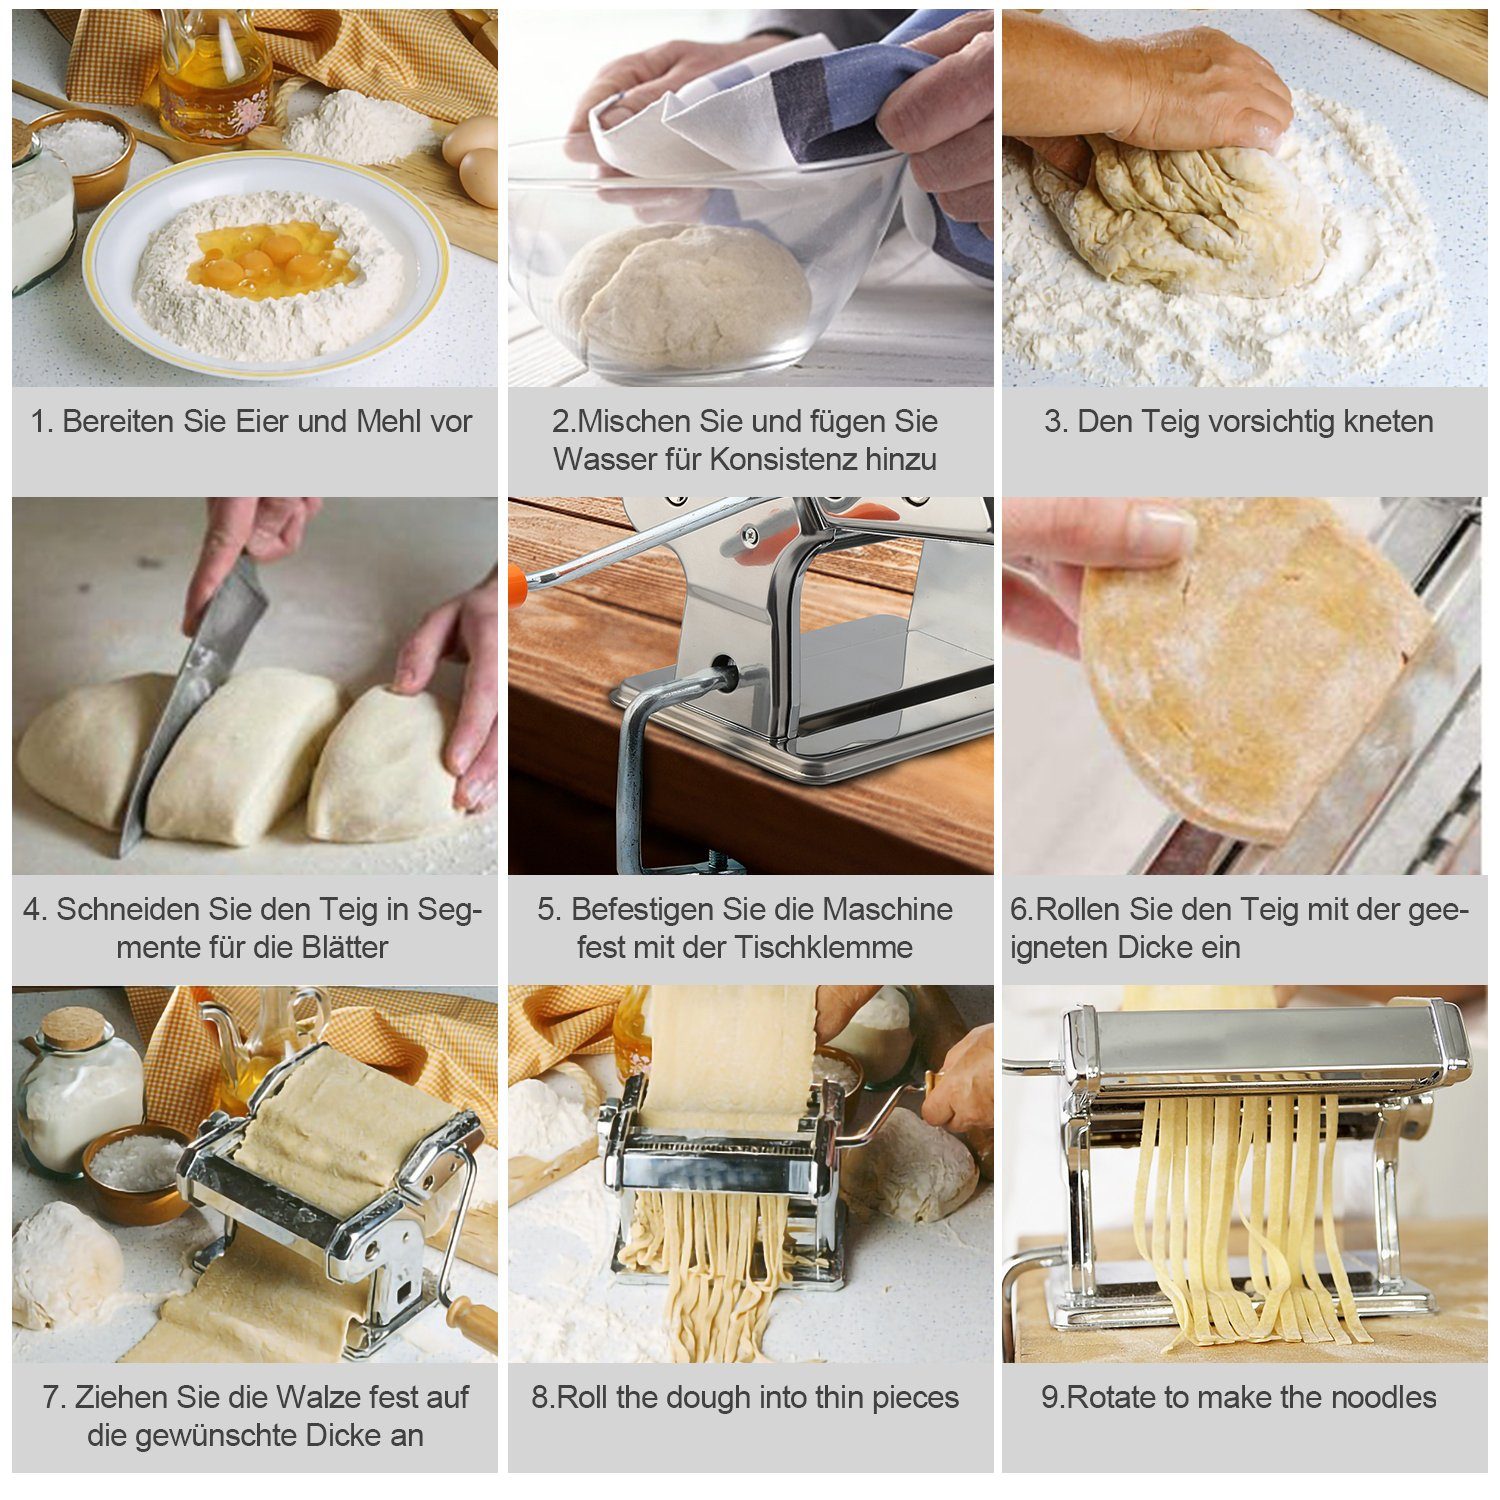 Lasagne Frische Gimisgu Pasta Spaghetti Maker Bandnudeln Pastamaschine manuelle, Nudelaufsätze Edelstahl Nudelmaschine Cannelloni für Walze